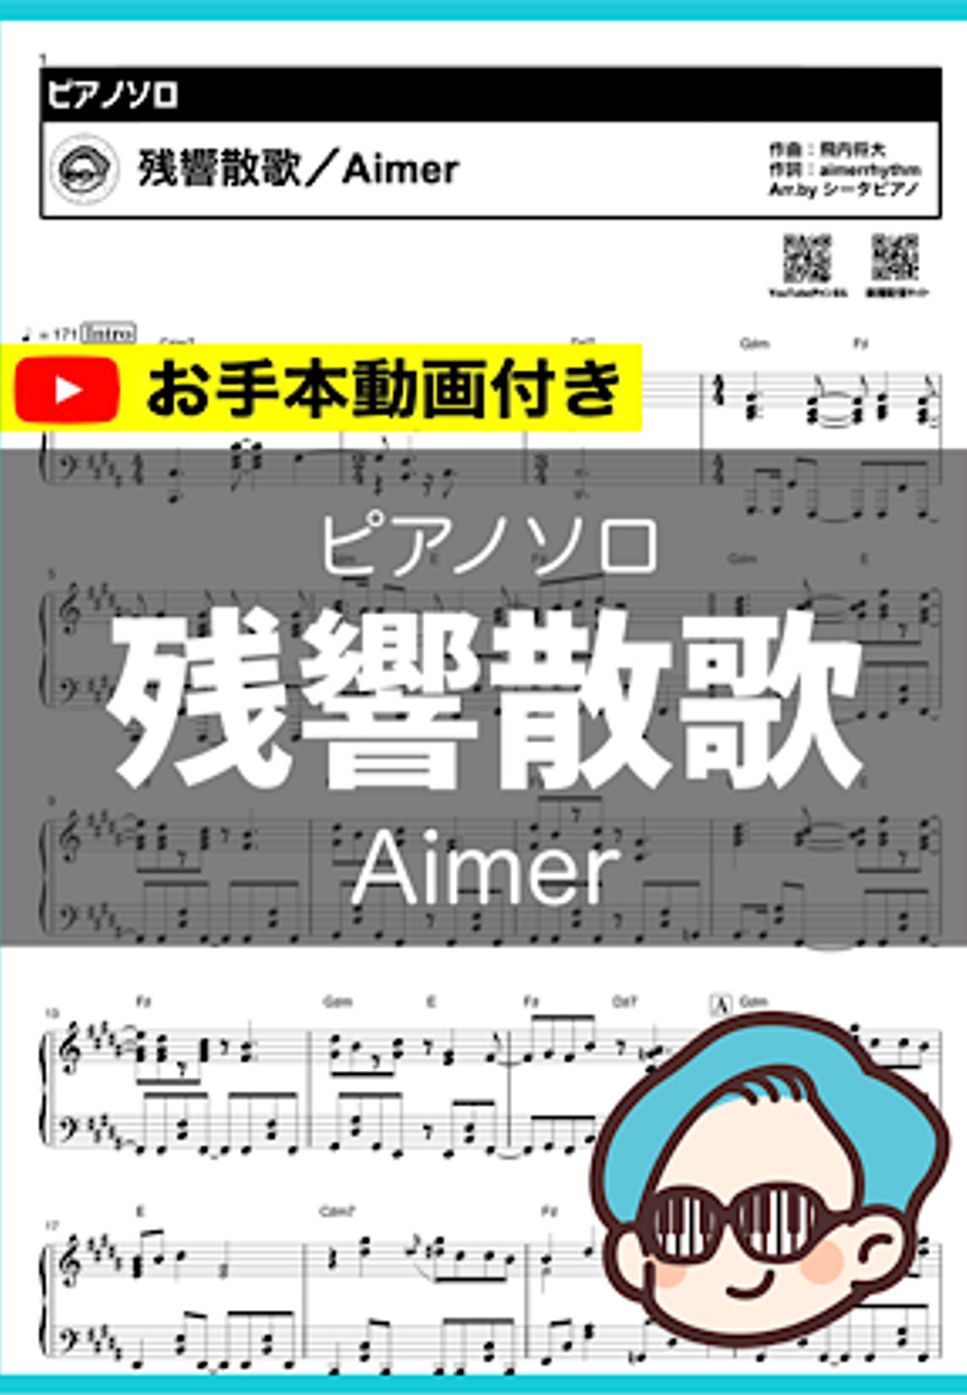 Aimer - 残響散歌 by シータピアノ